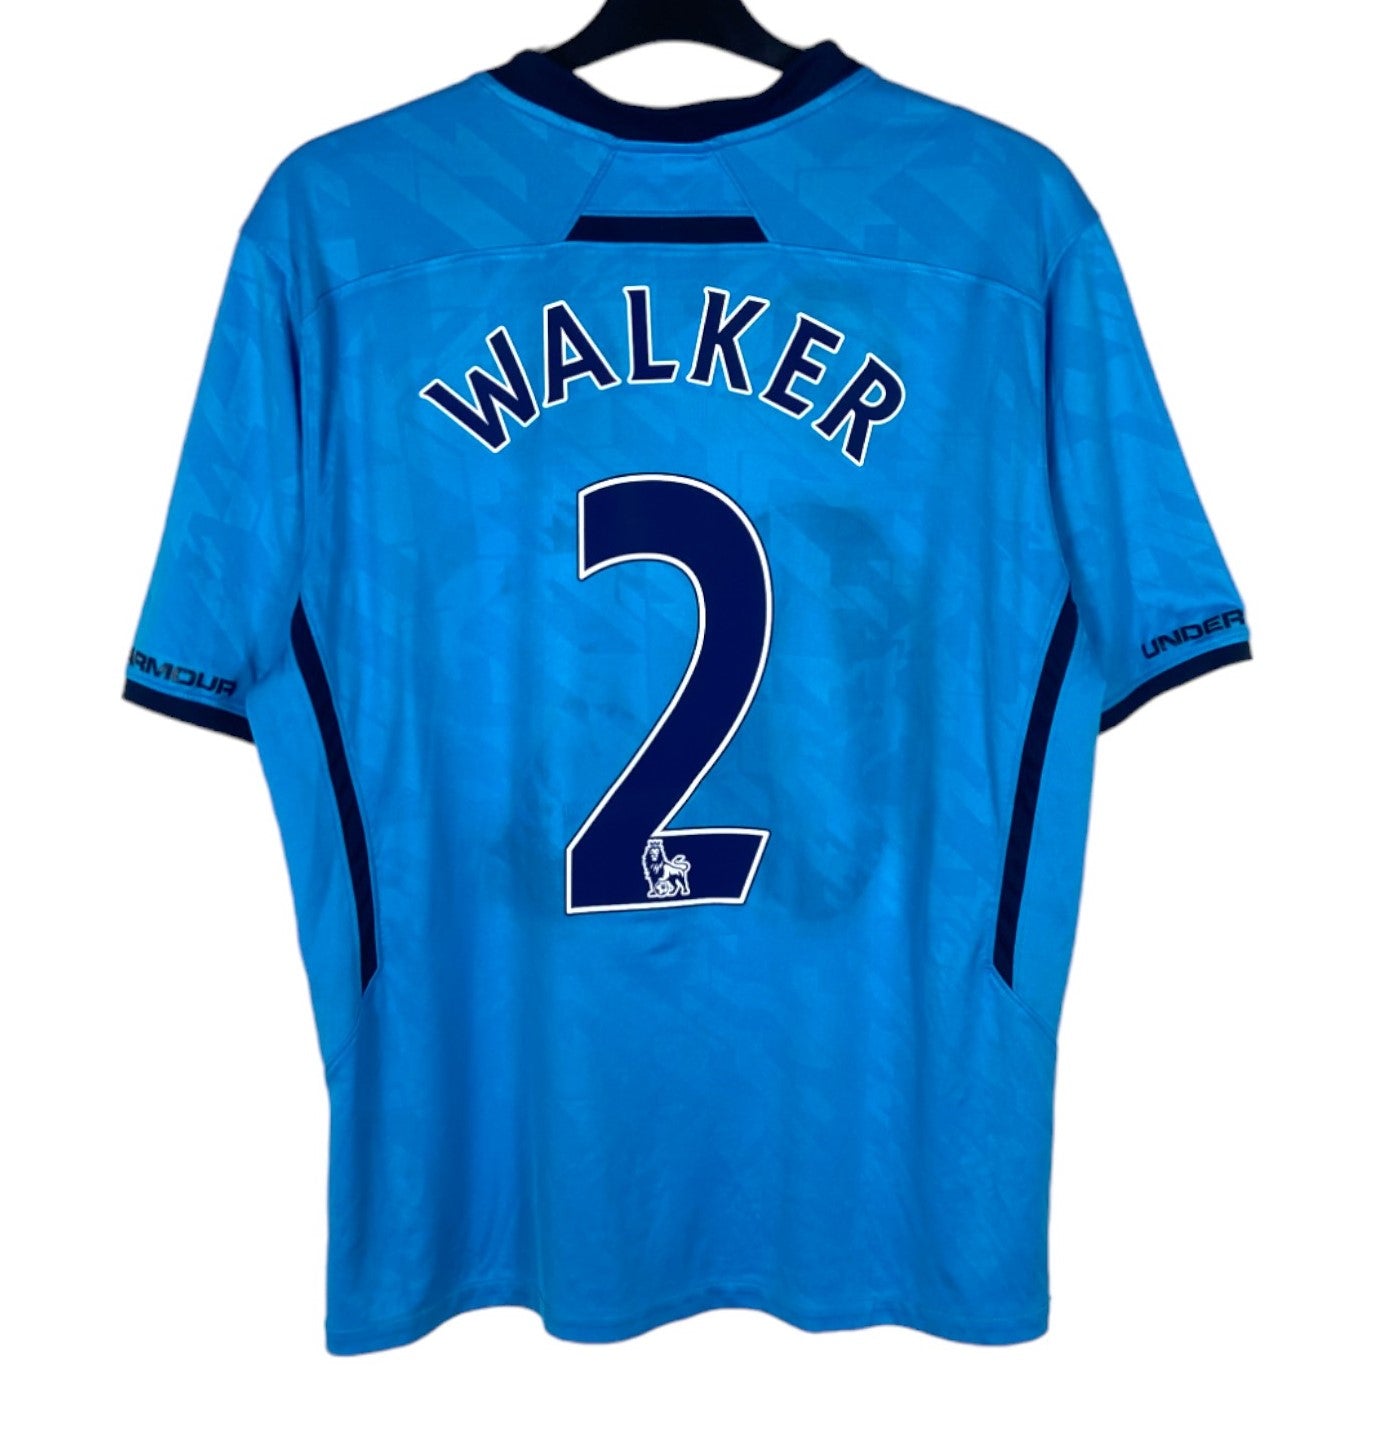 2013 2014 Tottenham Hotspur Under Armour Away Football Shirt WALKER 2 Men's Large